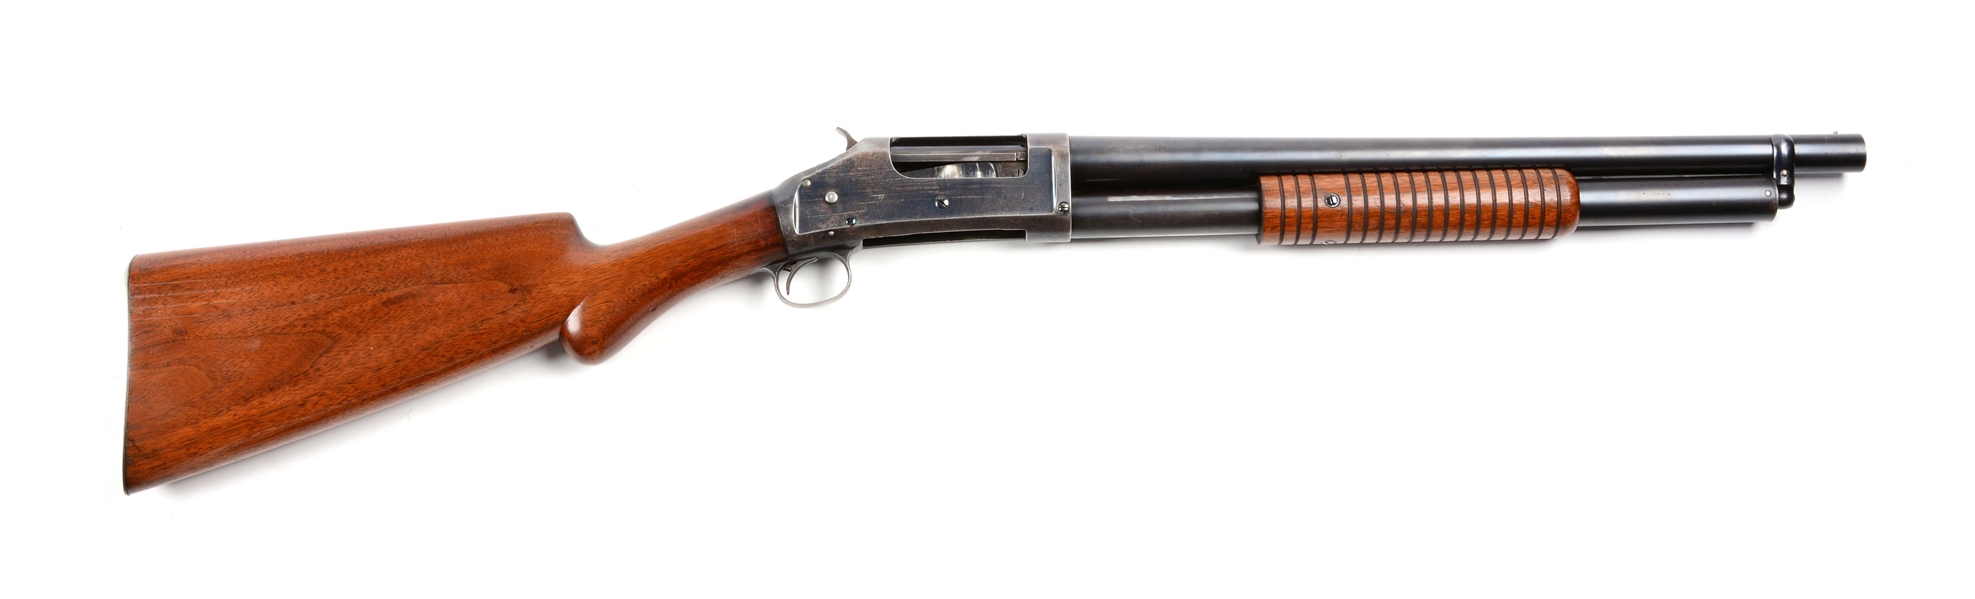 (C) WINCHESTER 1897 ROUND KNOB SOLID FRAME RIOT GUN.